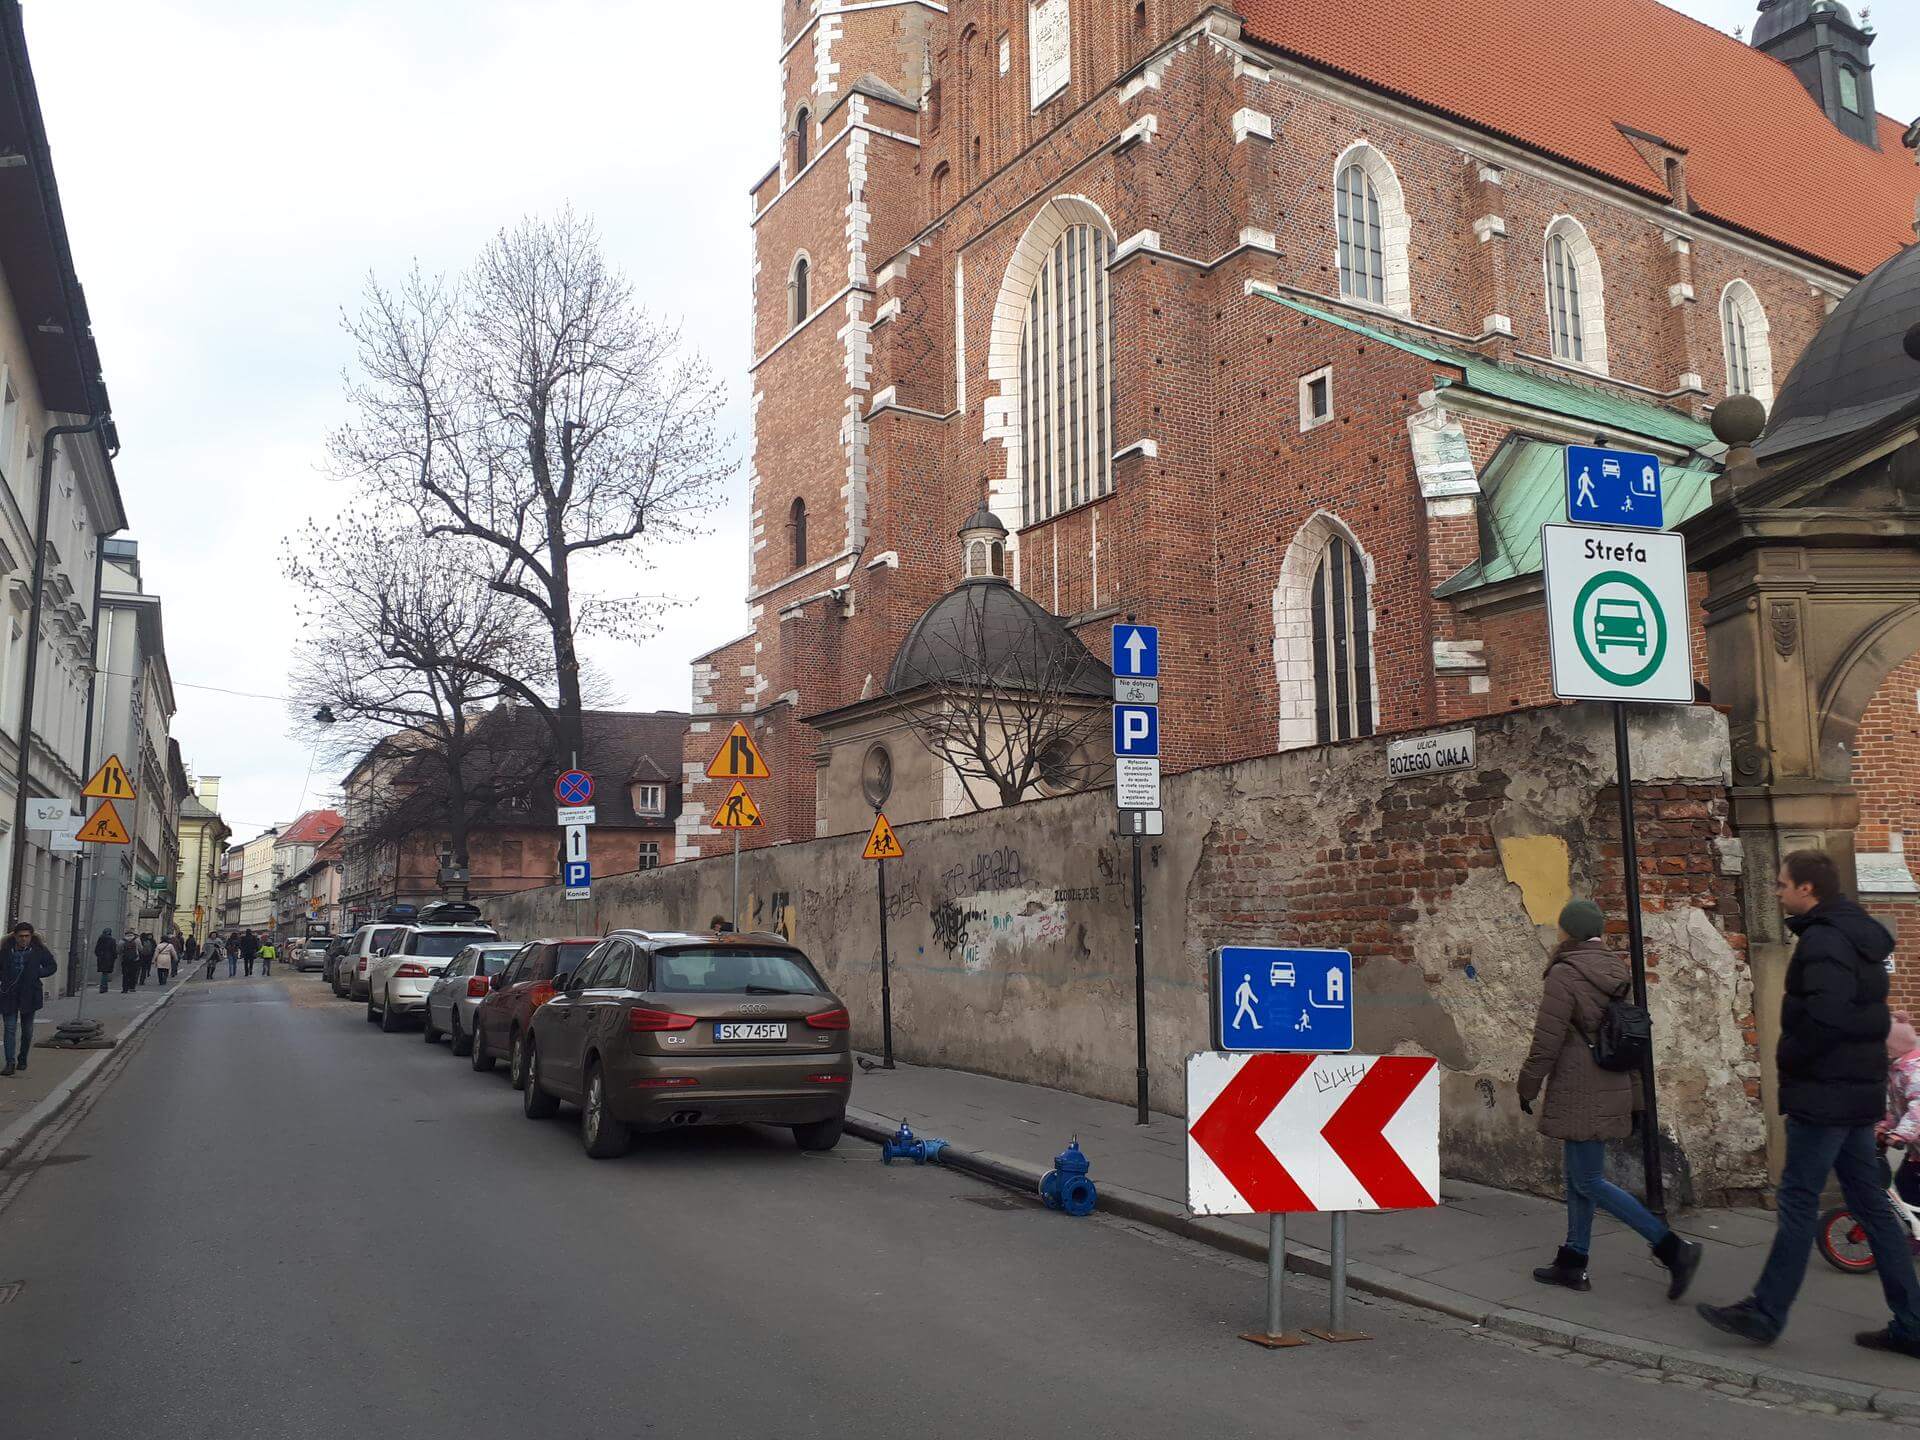 Strefa Czystego Transportu|Urząd Miasta Krakowa Parking|Urząd Miasta Krakowa Parking|